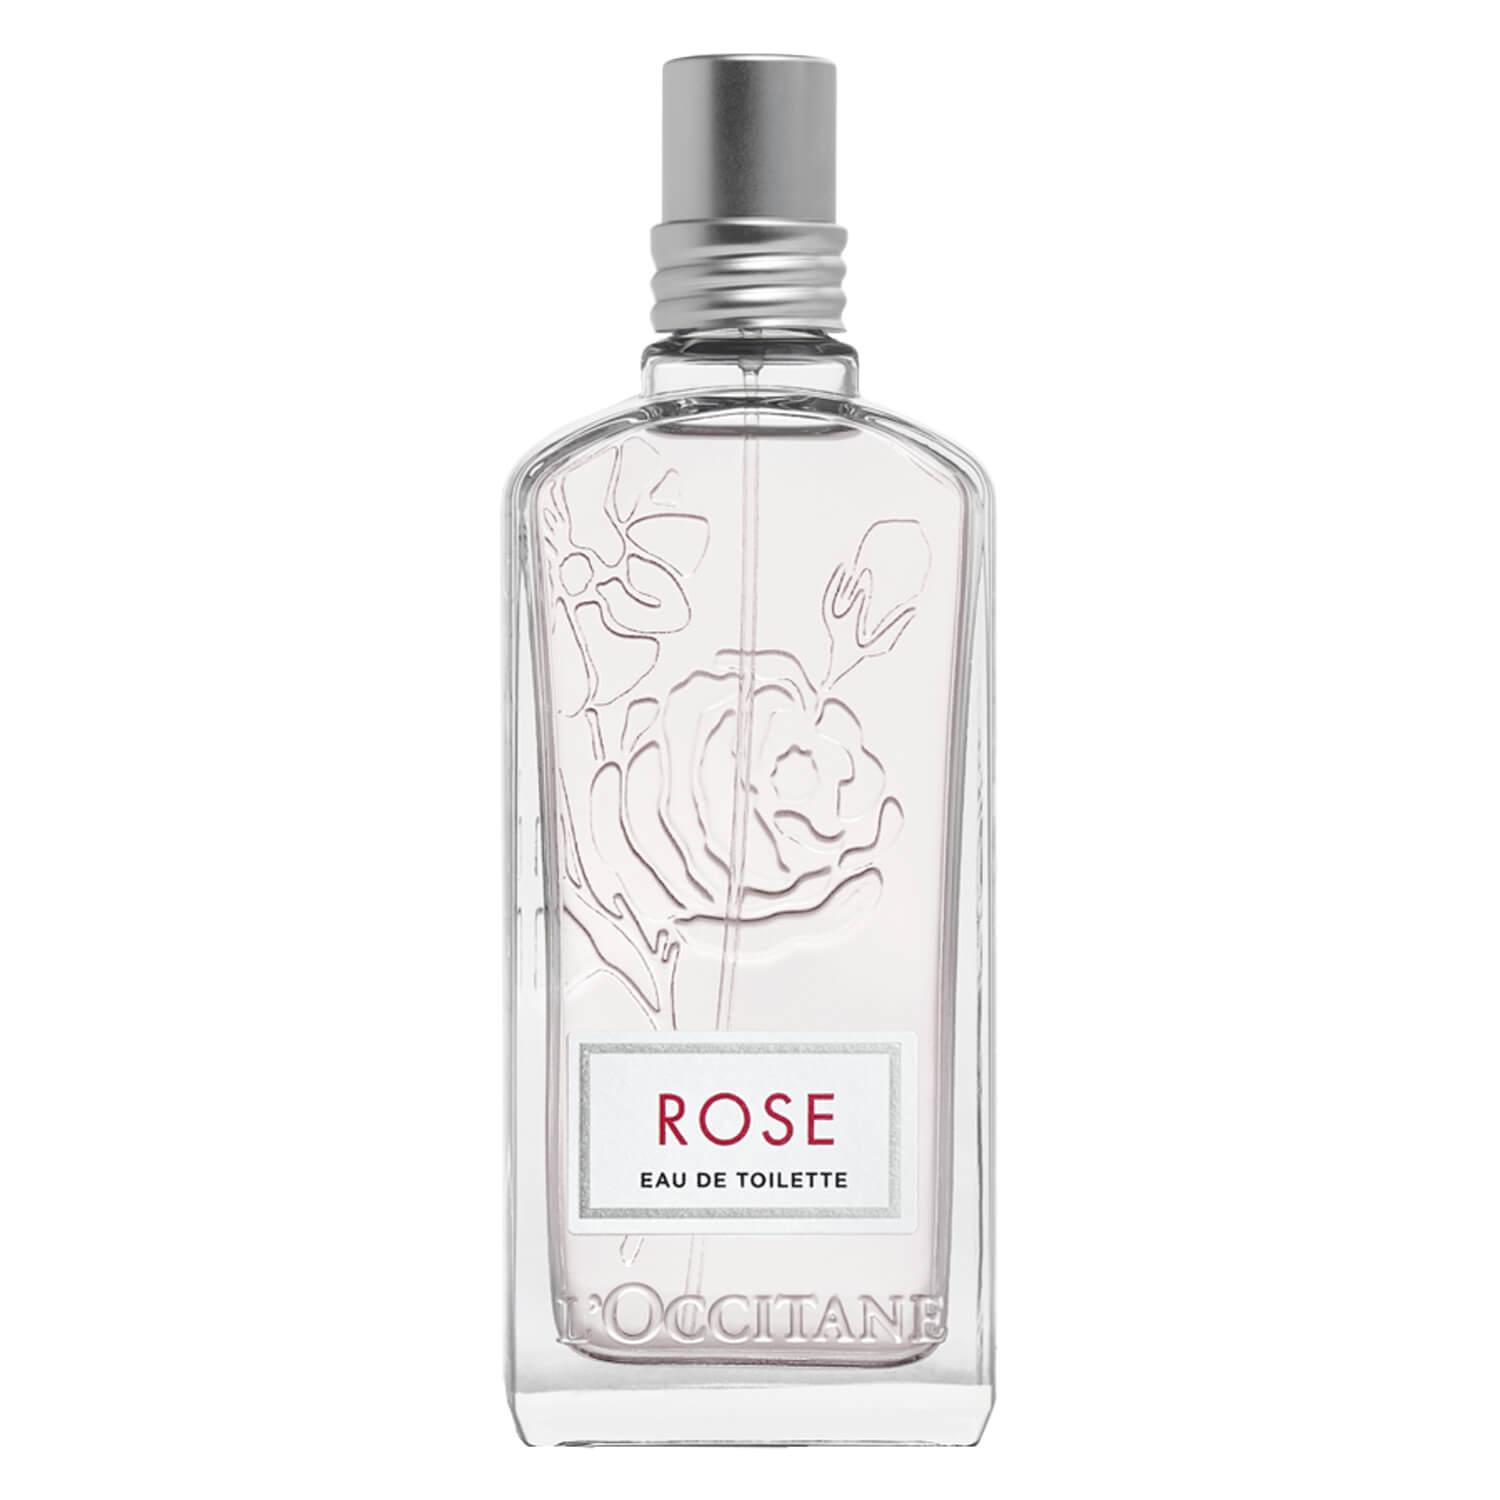 L'Occitane Fragrance - Rose Eau de Toilette